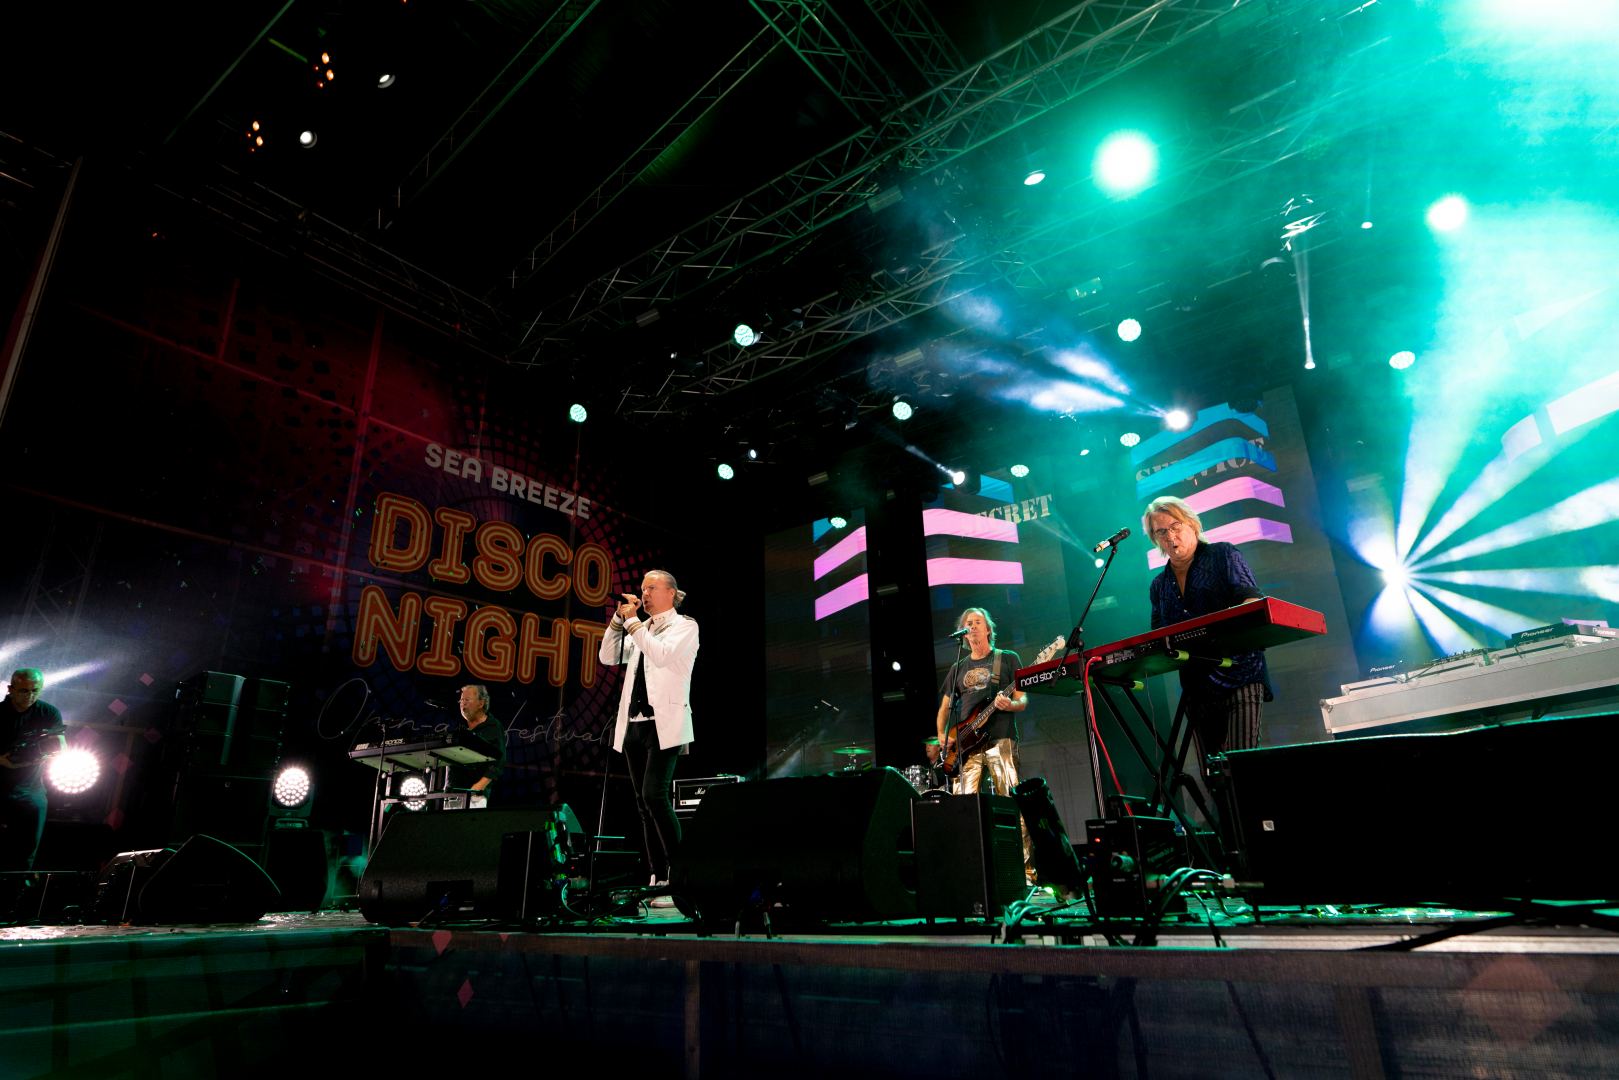 Впервые в Баку прошел грандиозный Sea Breeze Disco Night со звёздами 80-х - Thomas Anders, Boney M, Secret Service, Pupo, Arabesque, Joy (ФОТО)